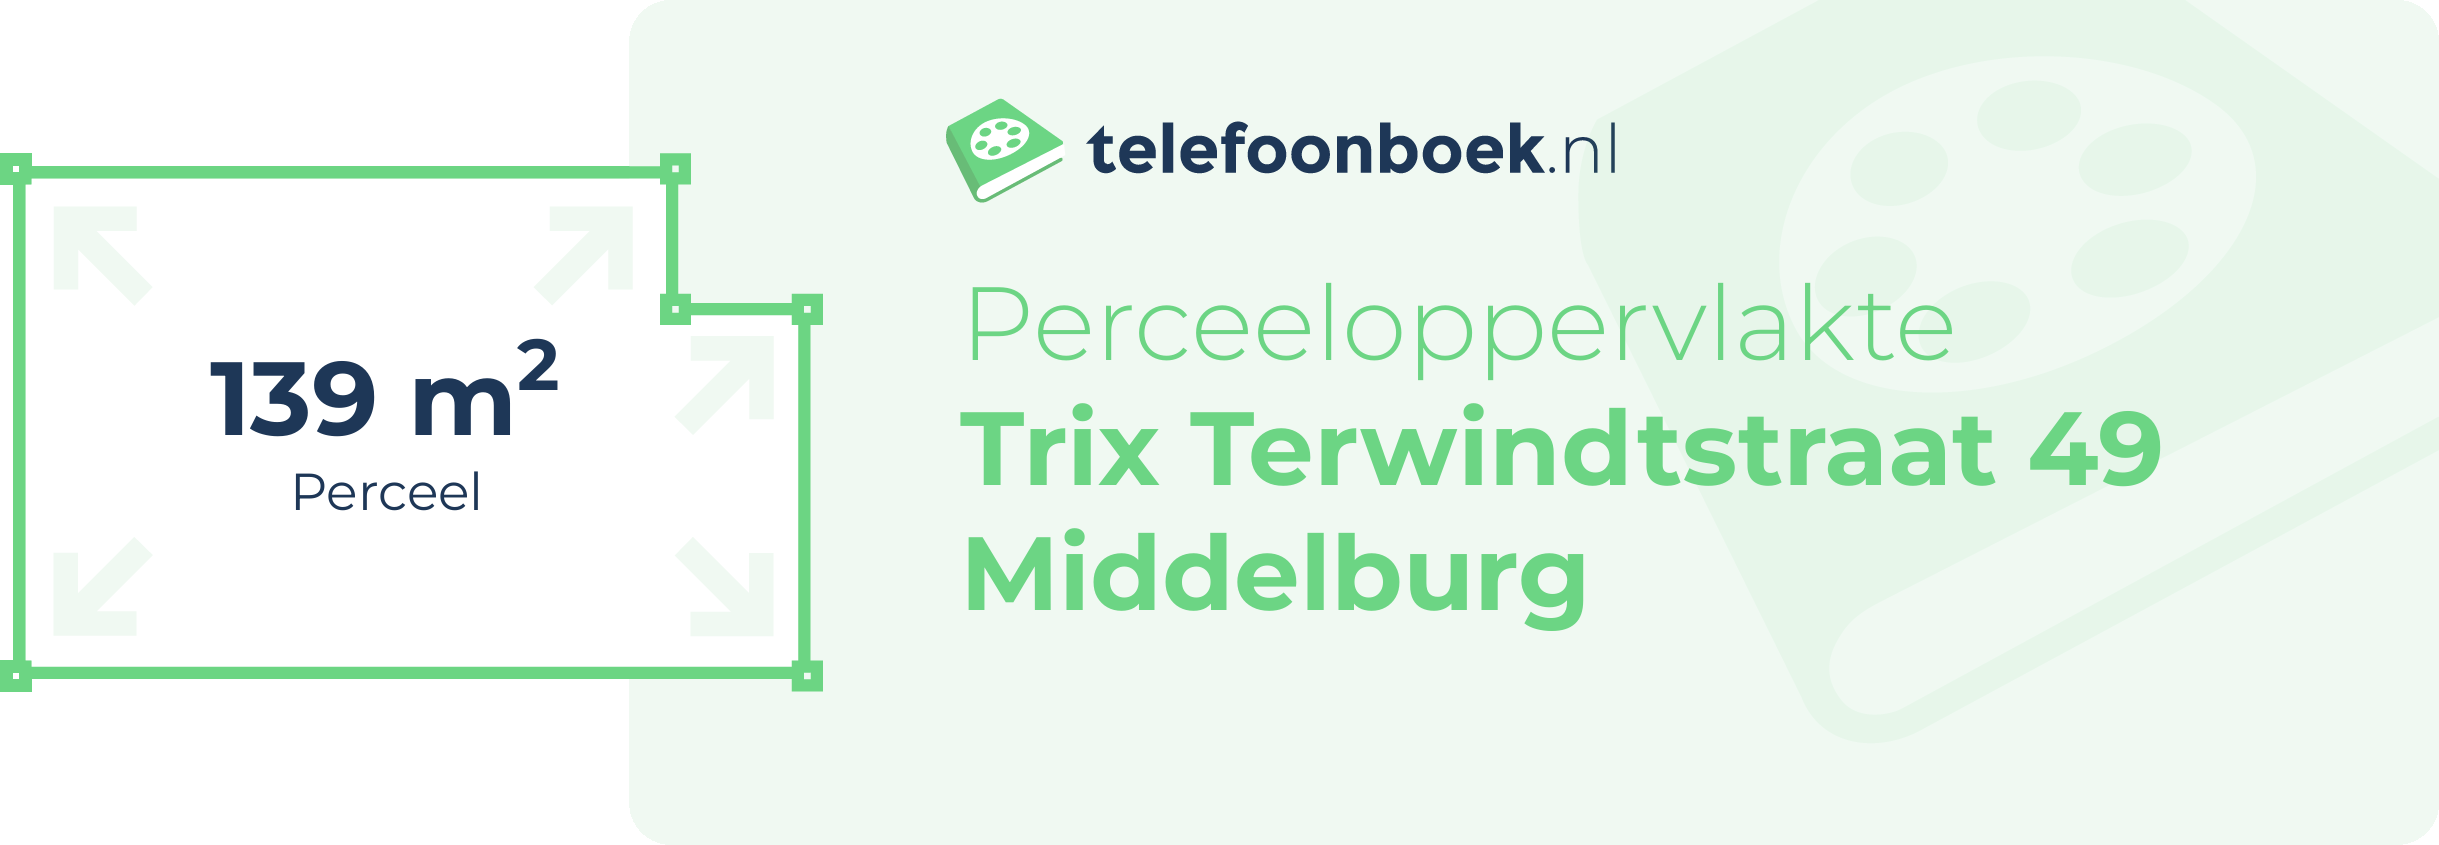 Perceeloppervlakte Trix Terwindtstraat 49 Middelburg